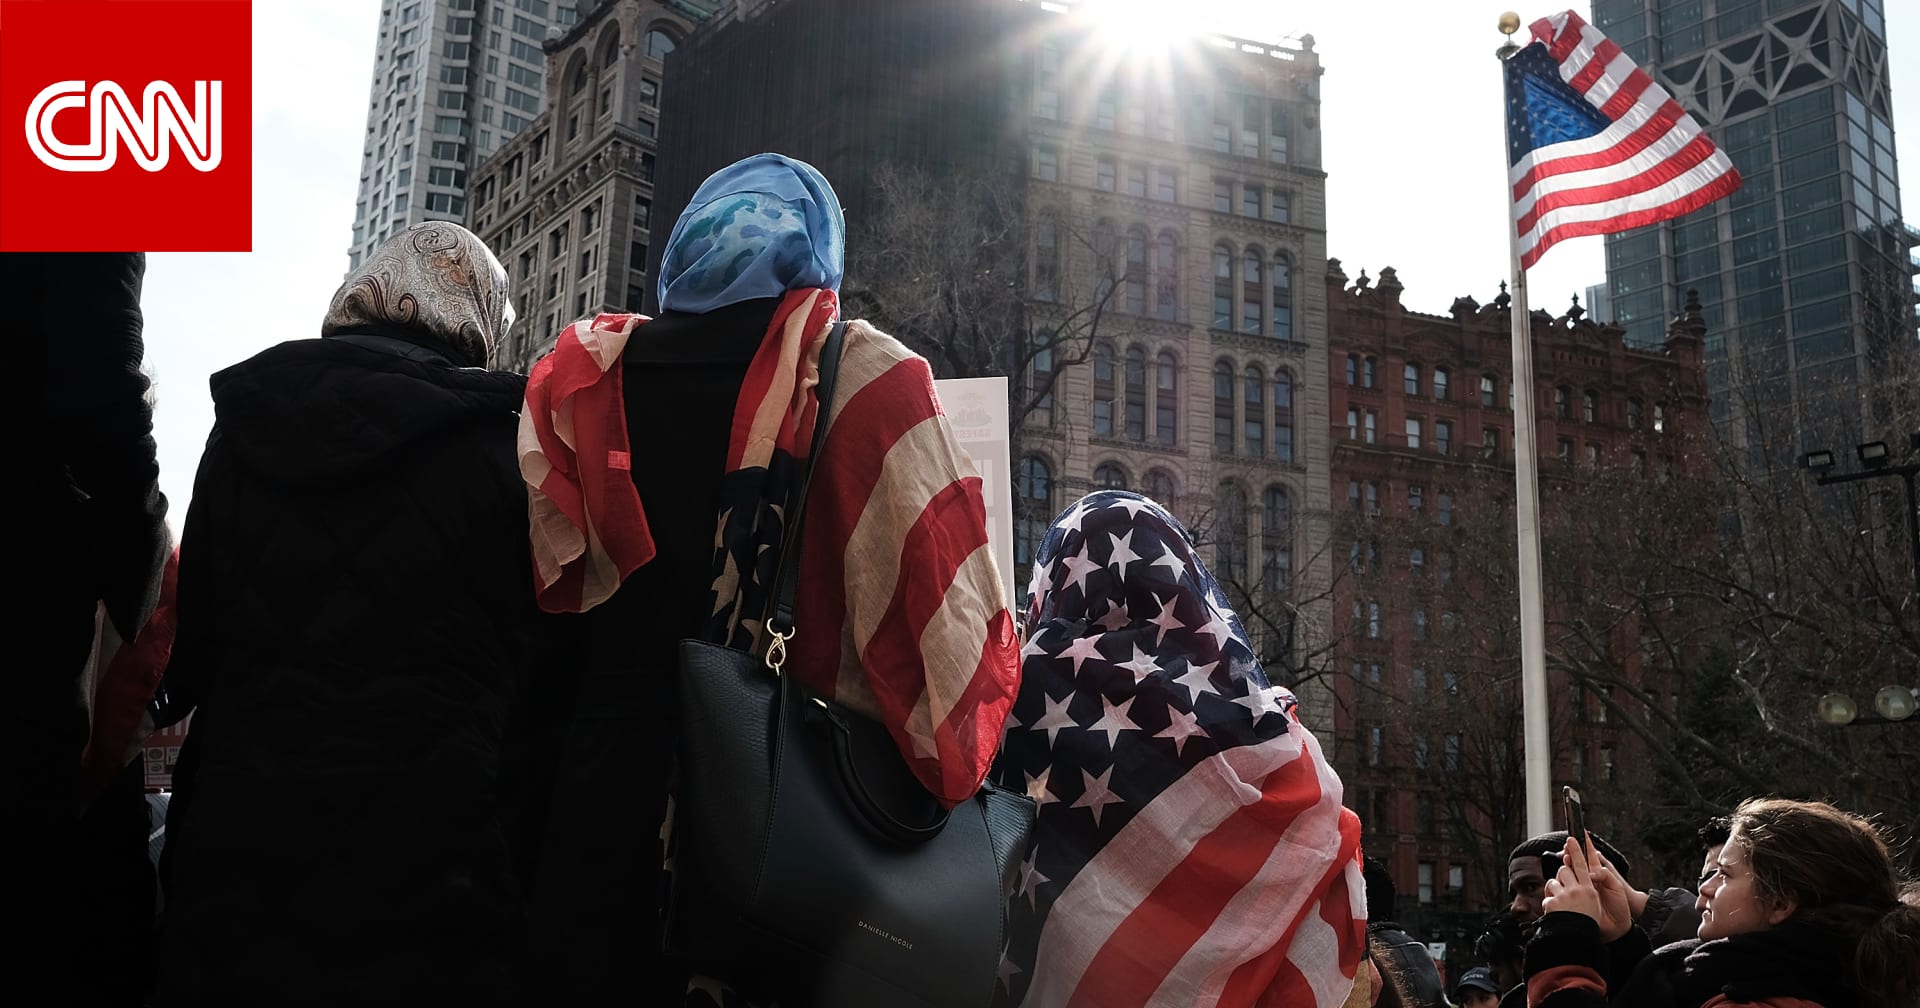 ارتفاع "مروّع وغير مسبوق" بعدد تقارير التحيز ضد العرب ومعاداة الإسلام بأمريكا